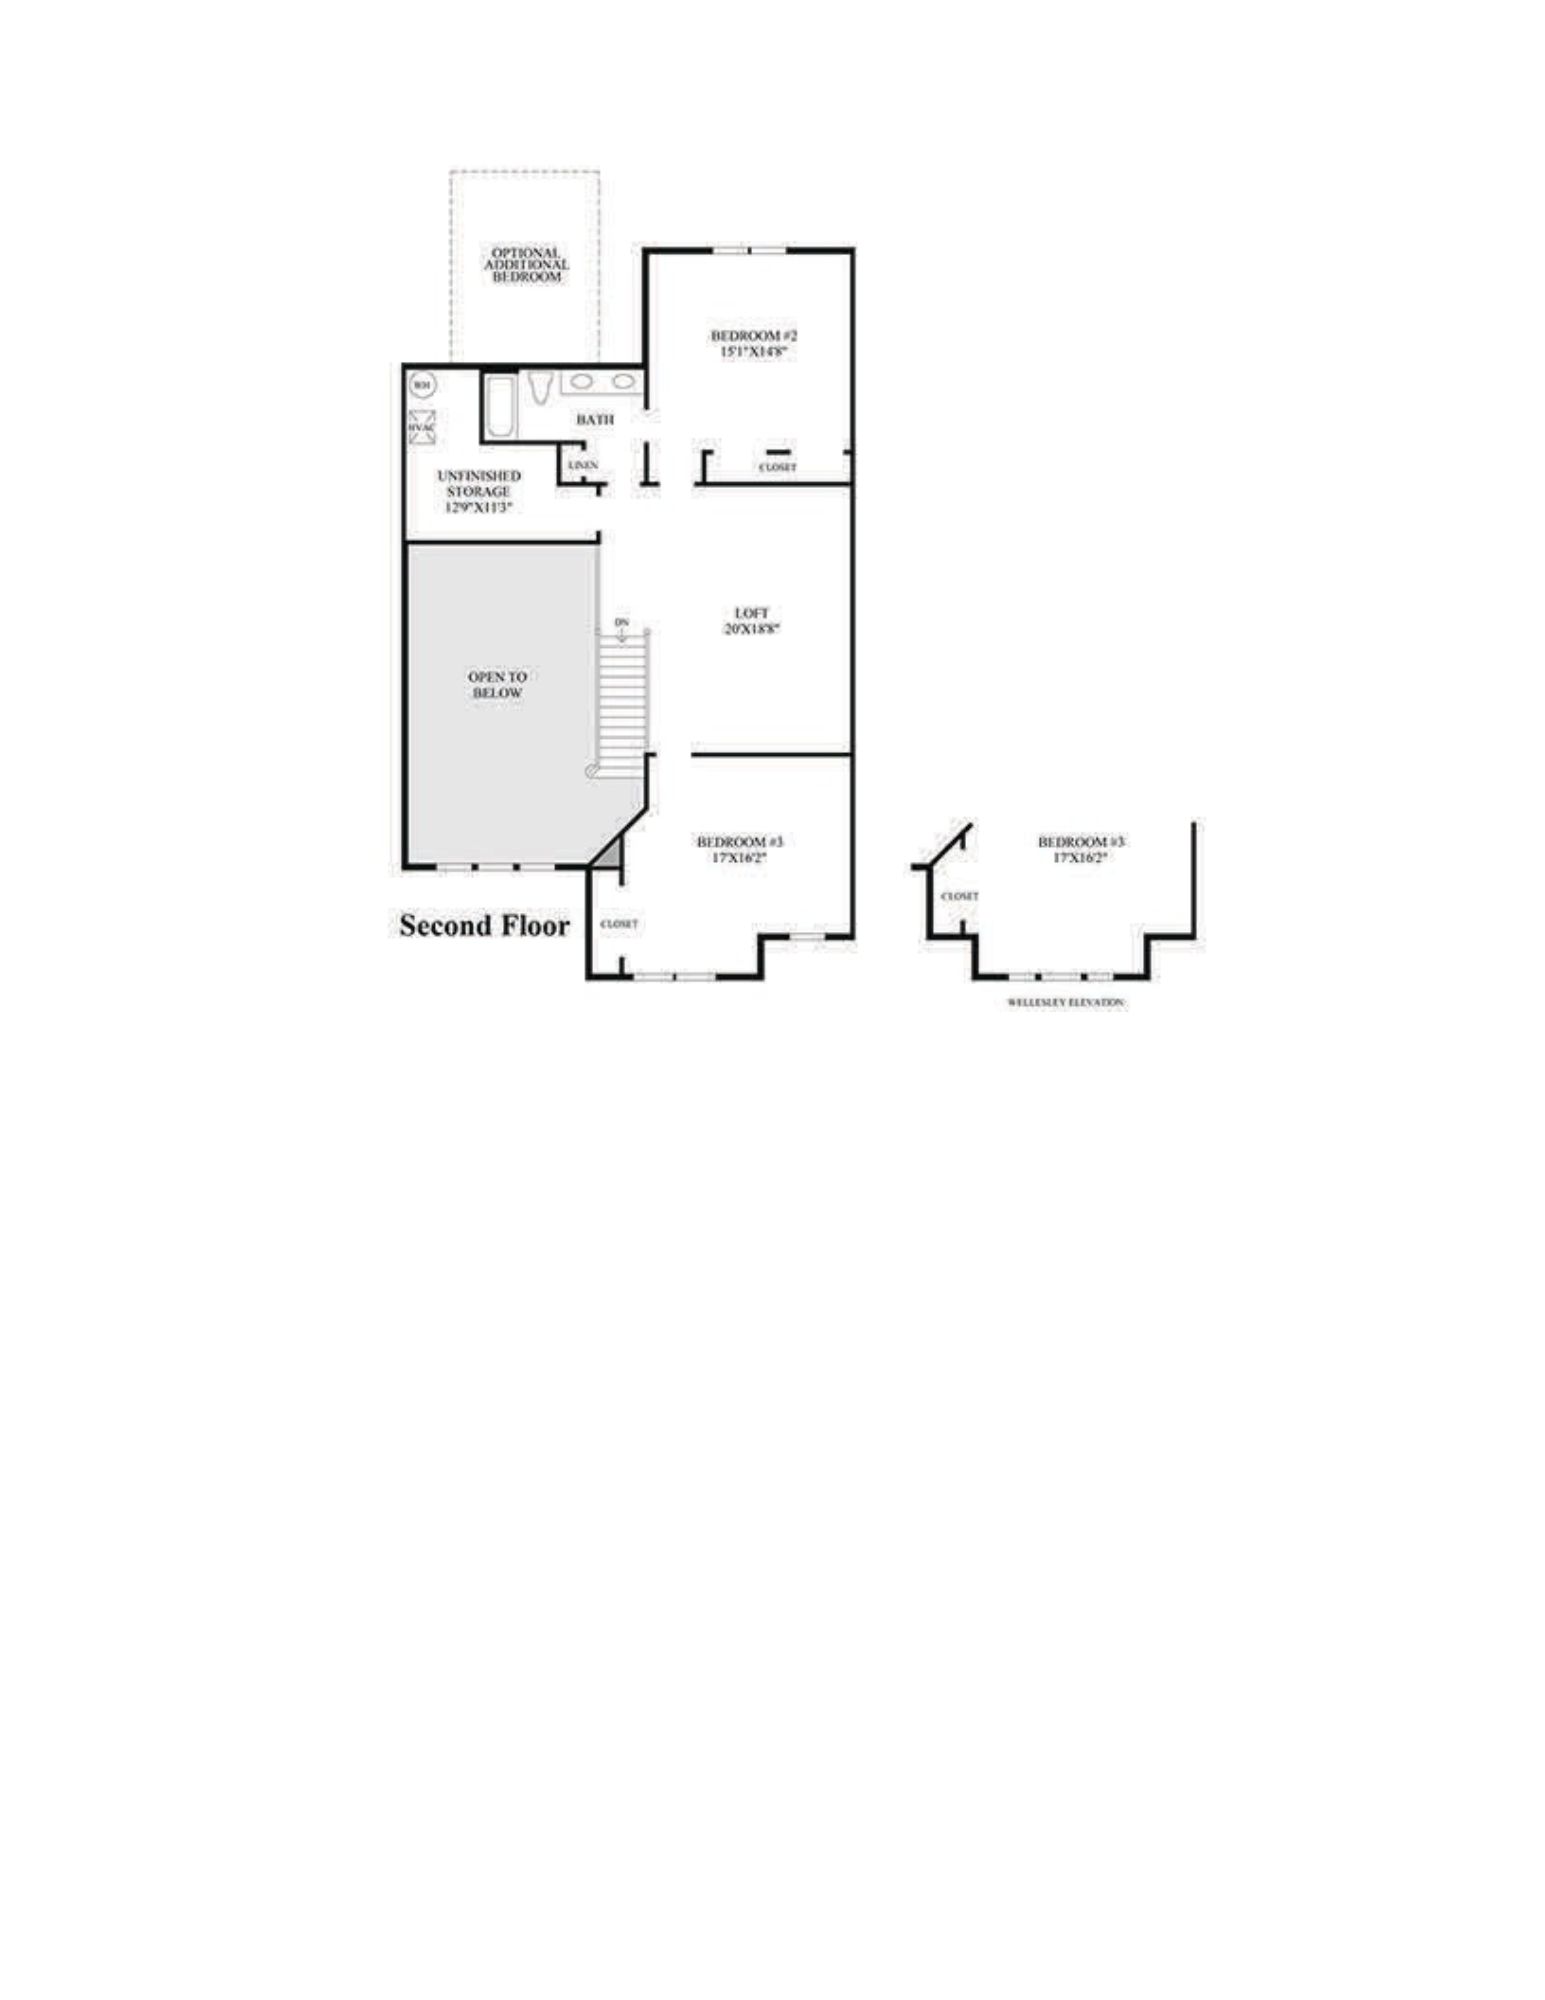 regency of yardley strathmere floor plan2